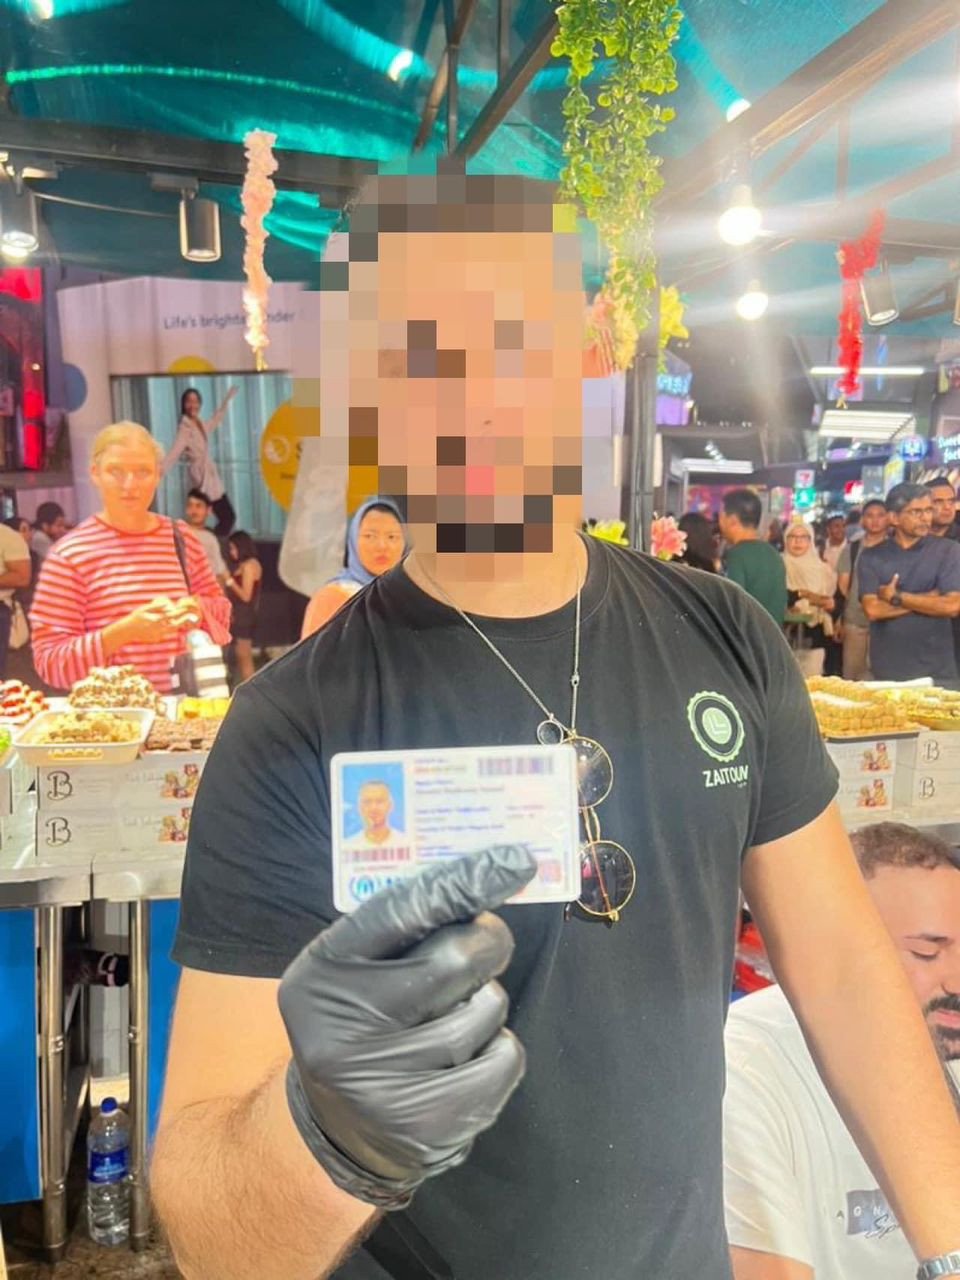 Siasatan mendapati premis dfikendalikan warga asing tanpa permit yang sah - gambar Facebook